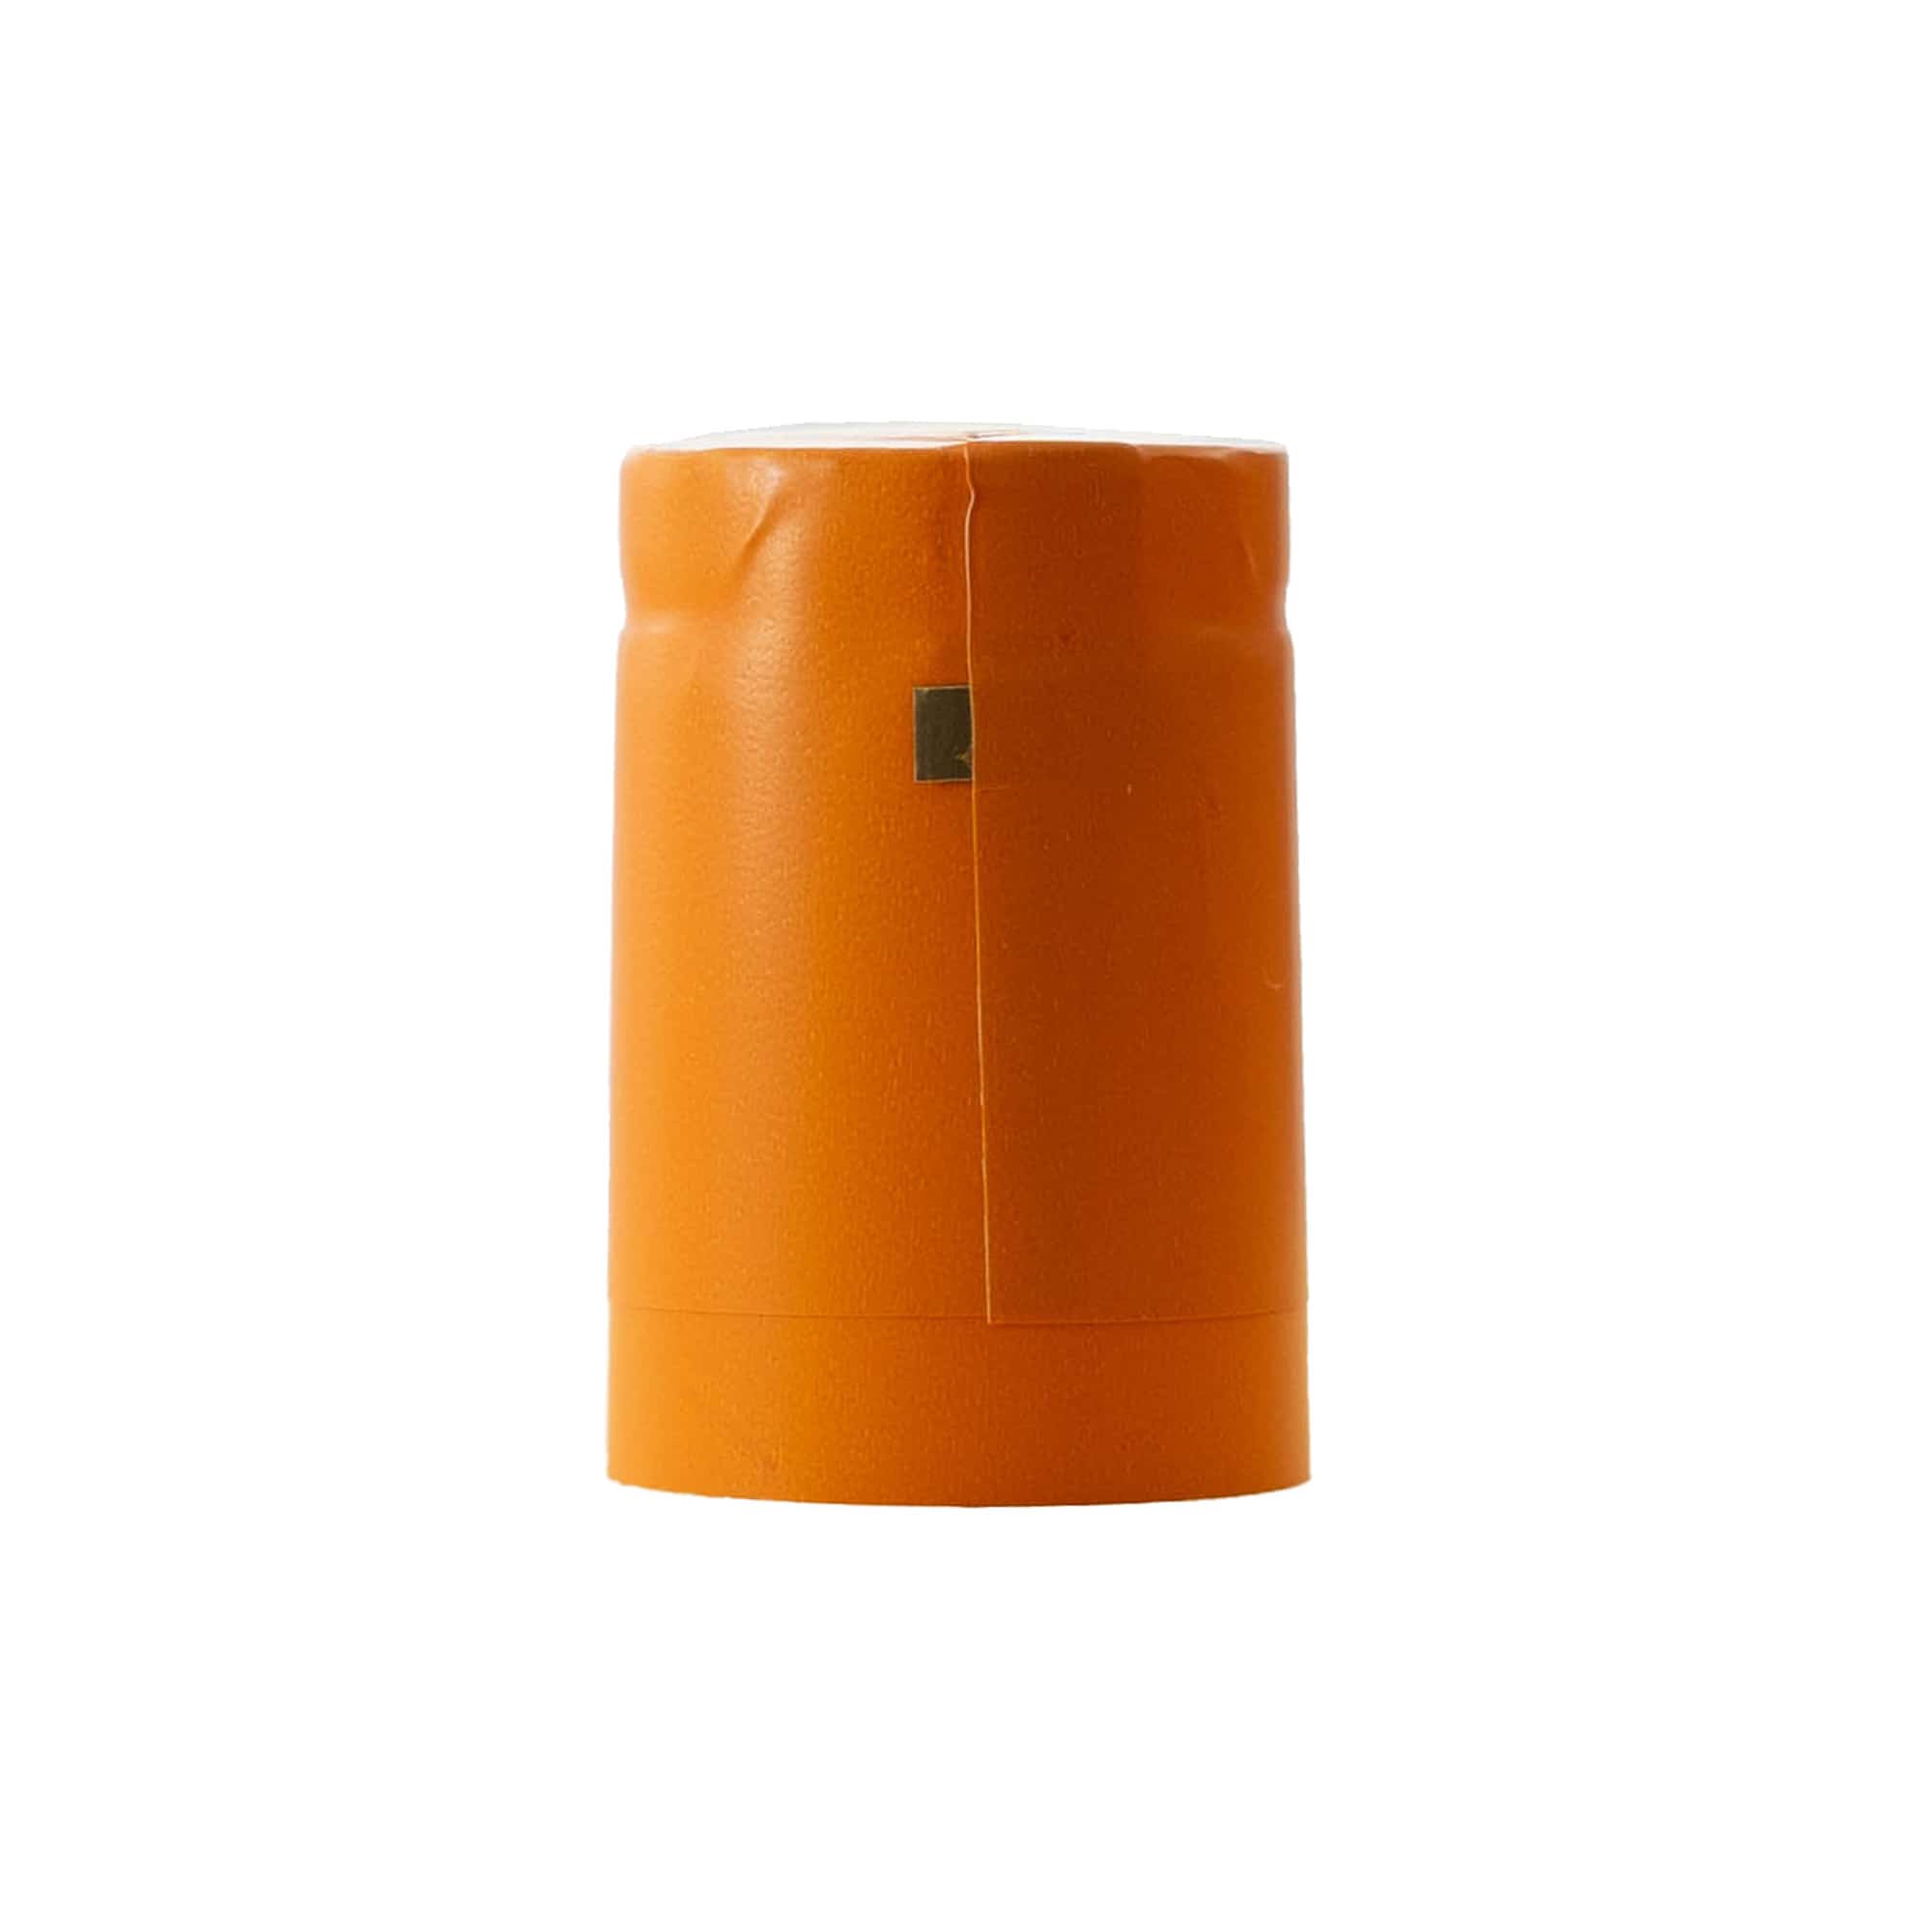 Heat shrink capsule 32x41, PVC plastic, orange